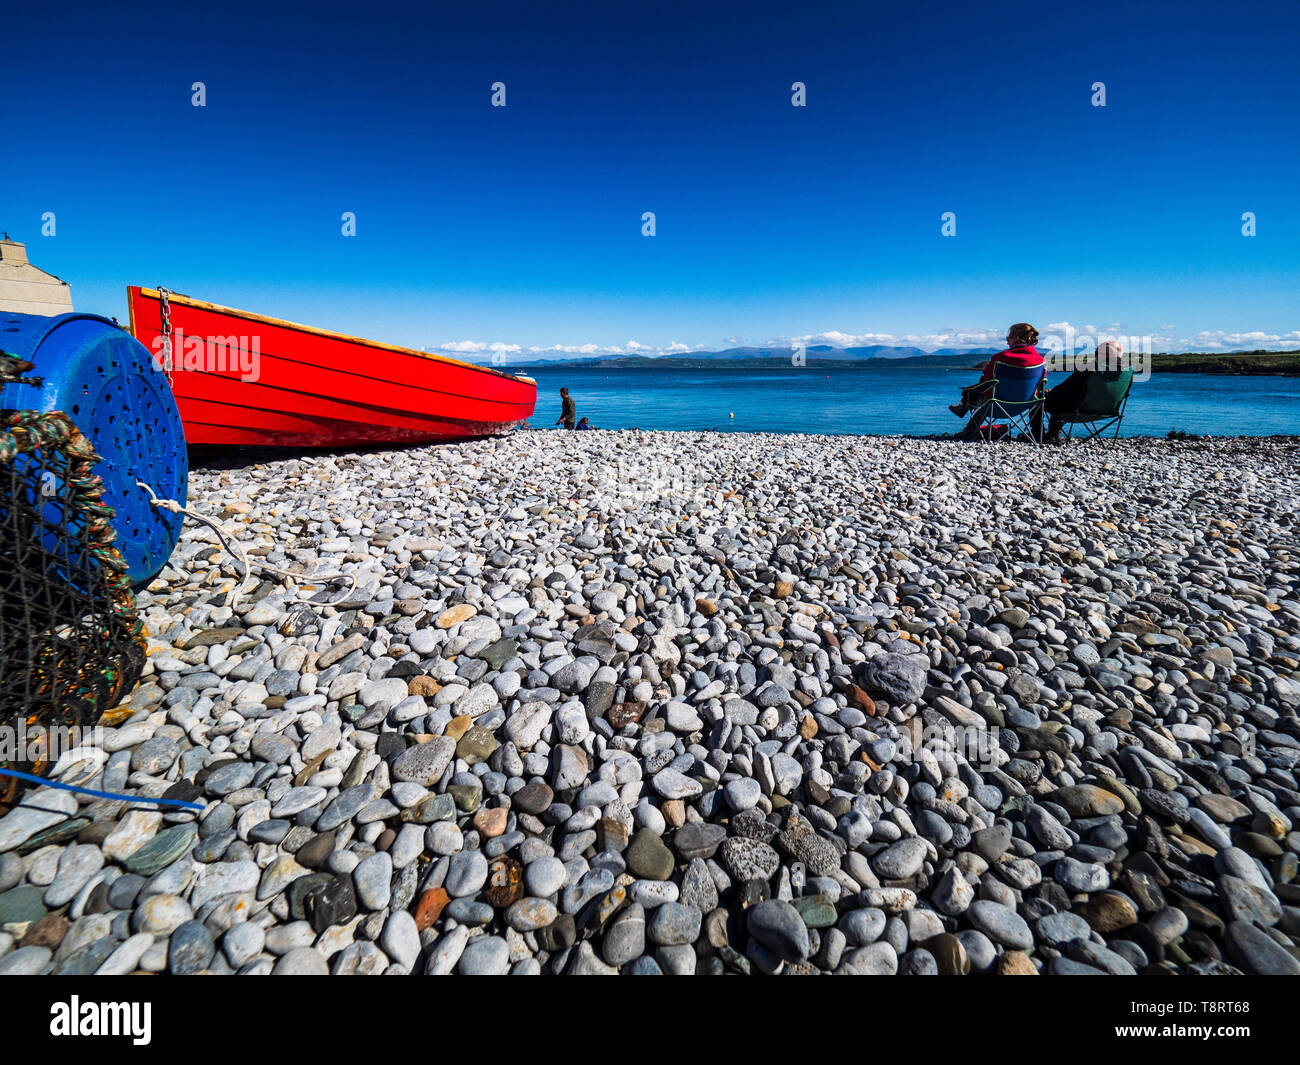 Staycation - British spiaggia vacanze - Anglesey - spiaggia di ciottoli con barca rossa Foto Stock